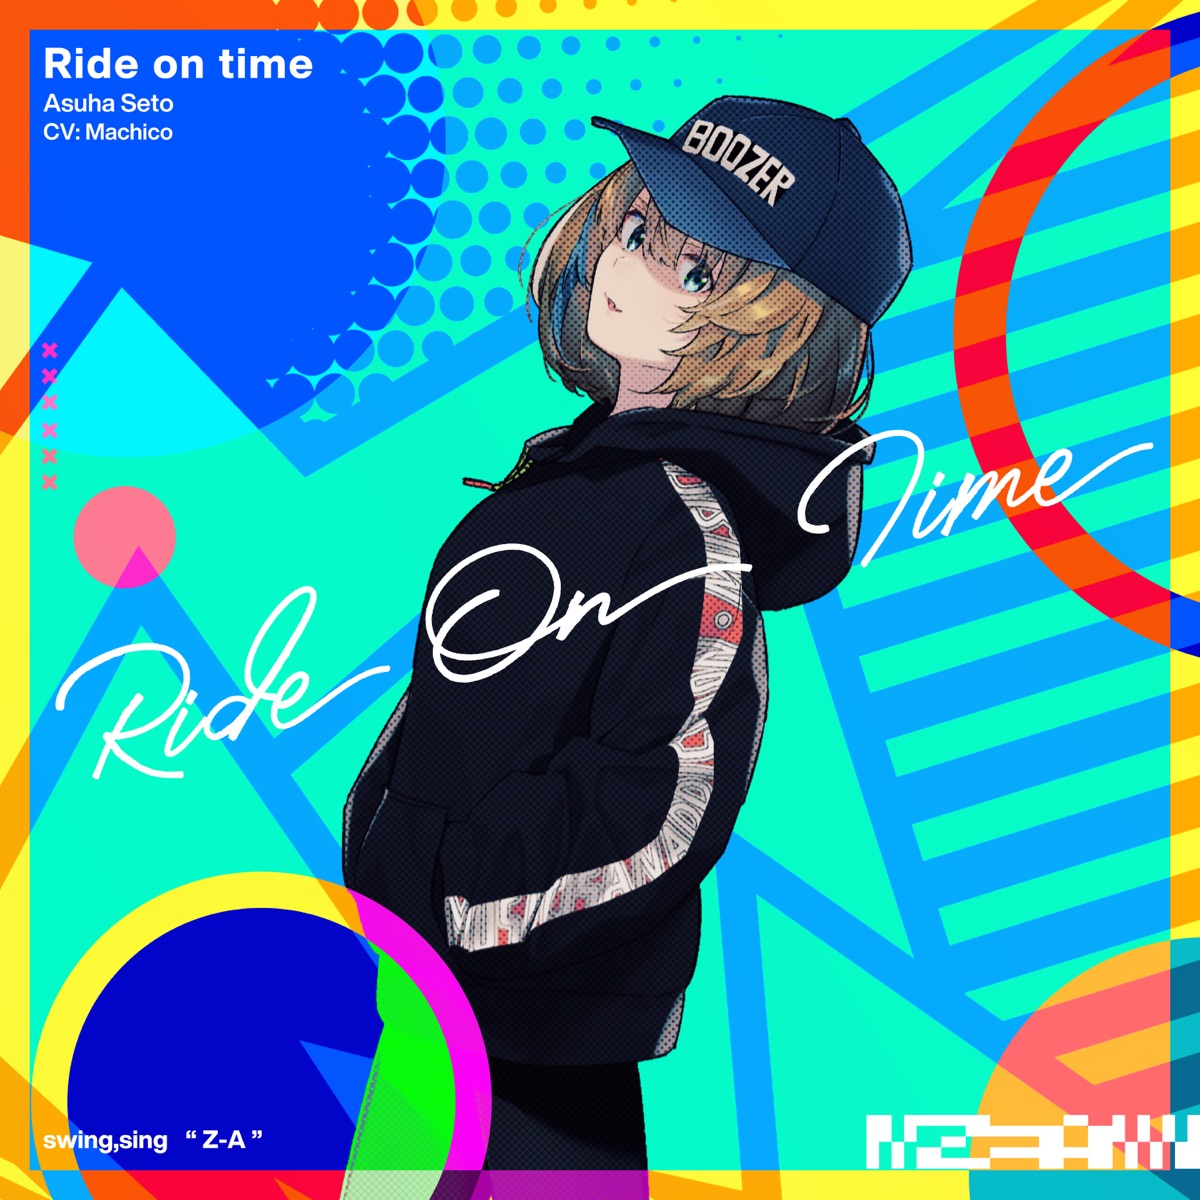 『瀬戸明日葉(Machico) - Ride on time』収録の『Ride on time』ジャケット